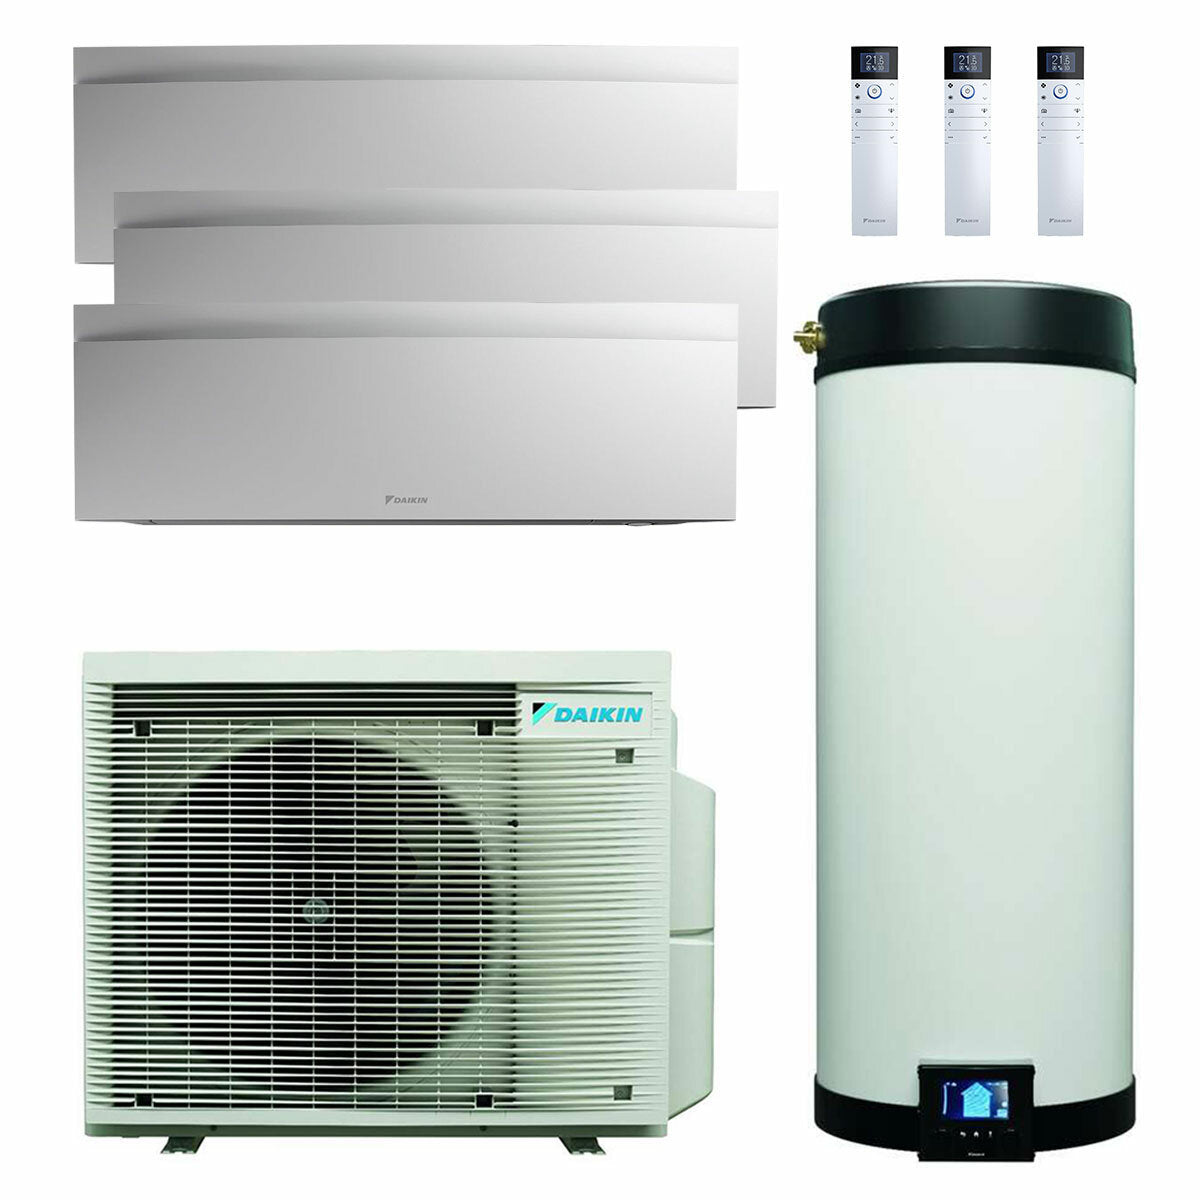 Daikin Multi+ trial split climatisation et eau chaude sanitaire - Unités intérieures Emura 3 blanc 9000+9000+12000 BTU - Réservoir 120 l